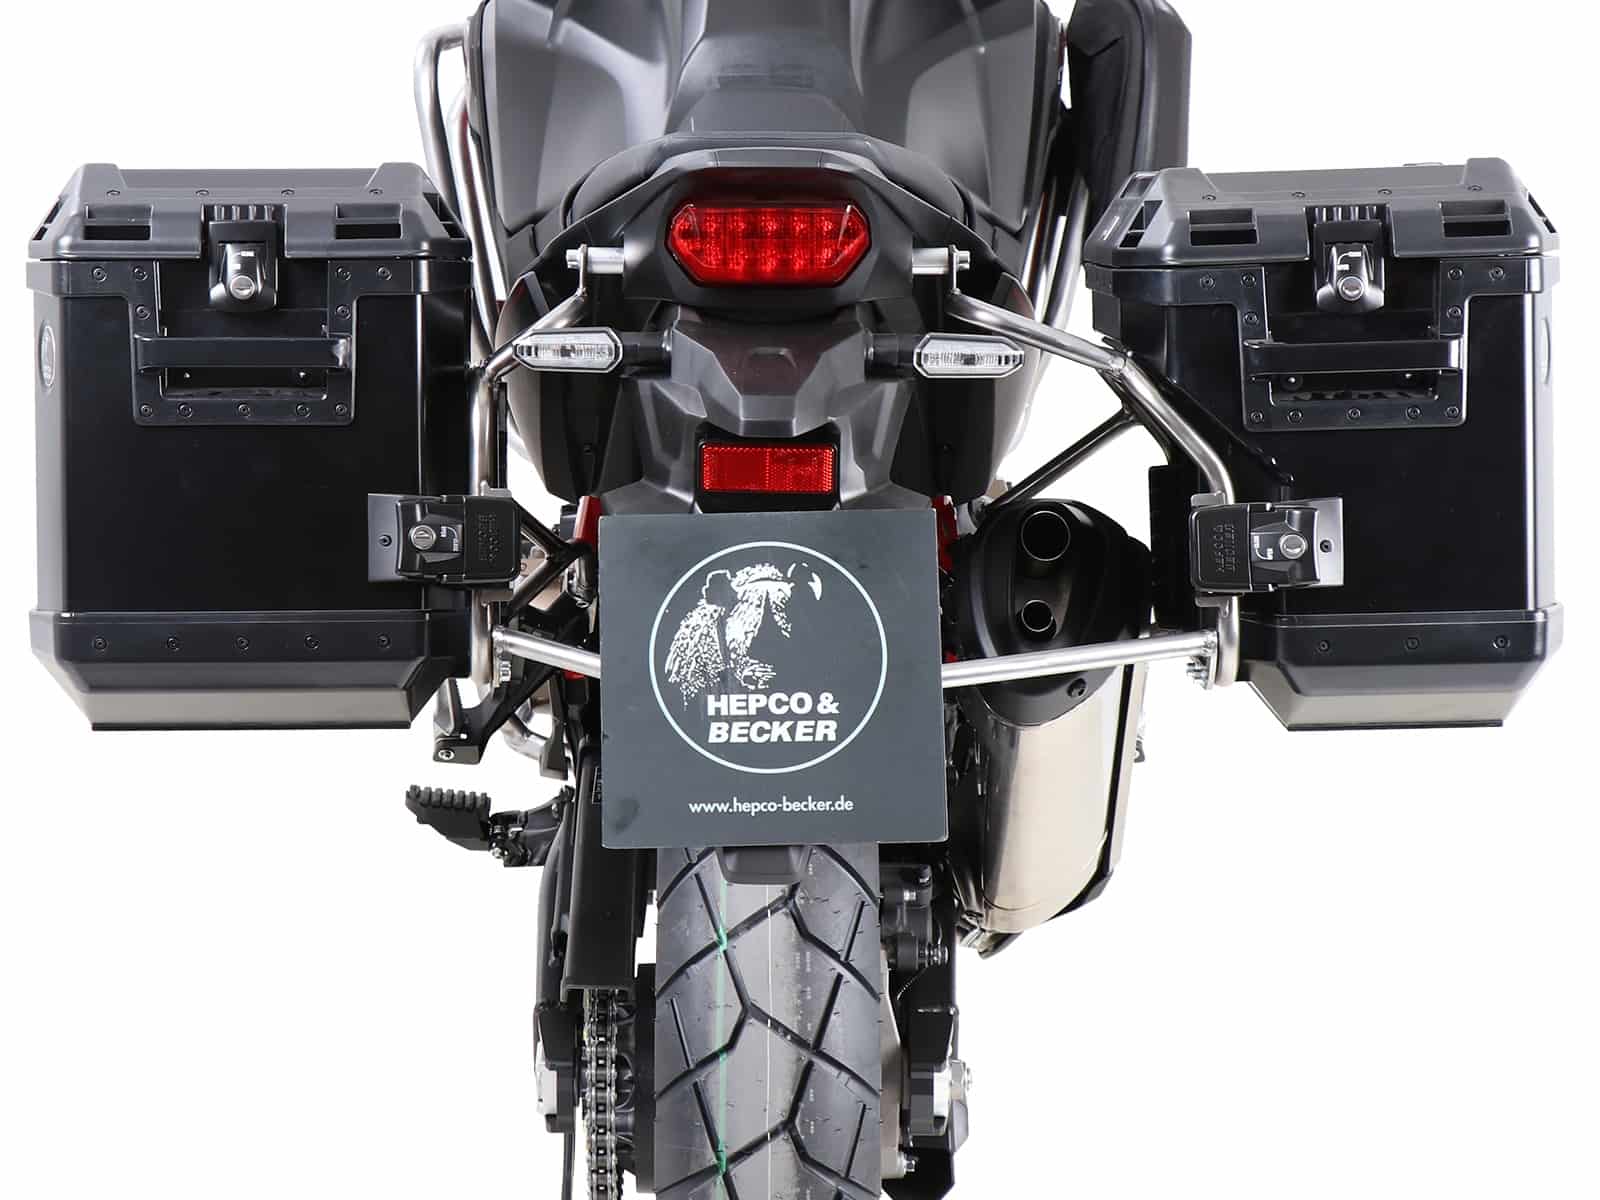 Kofferträgerset Cutout Edelstahl inkl. Xplorer Cutout schwarz Kofferset für Honda CRF 1100 L Africa Twin (2019-2021)